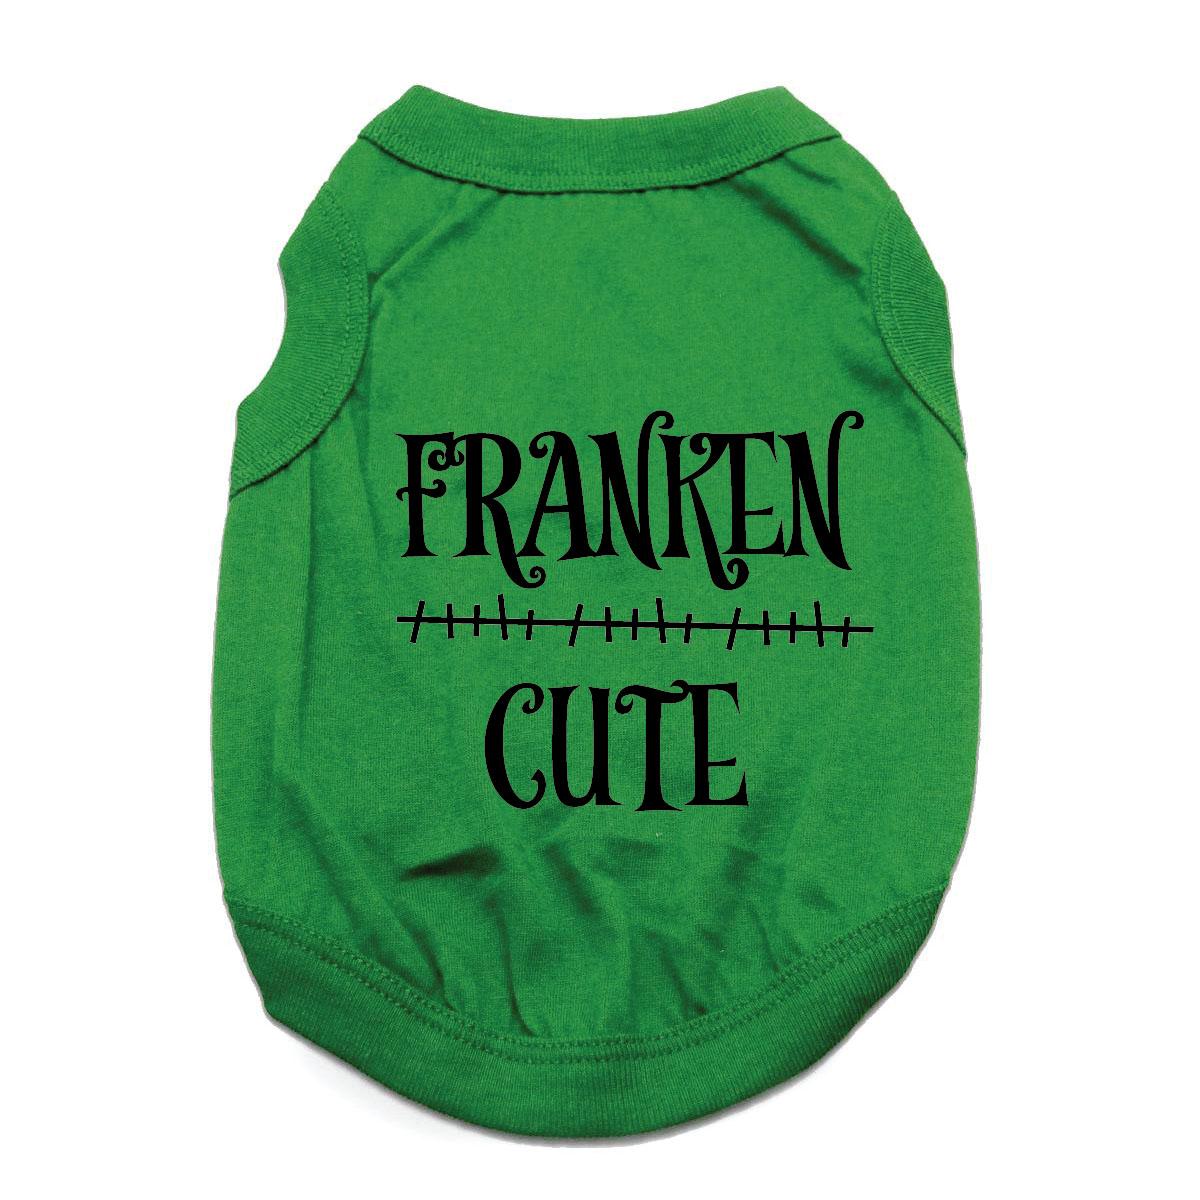 Franken Cute Dog Shirt - Green